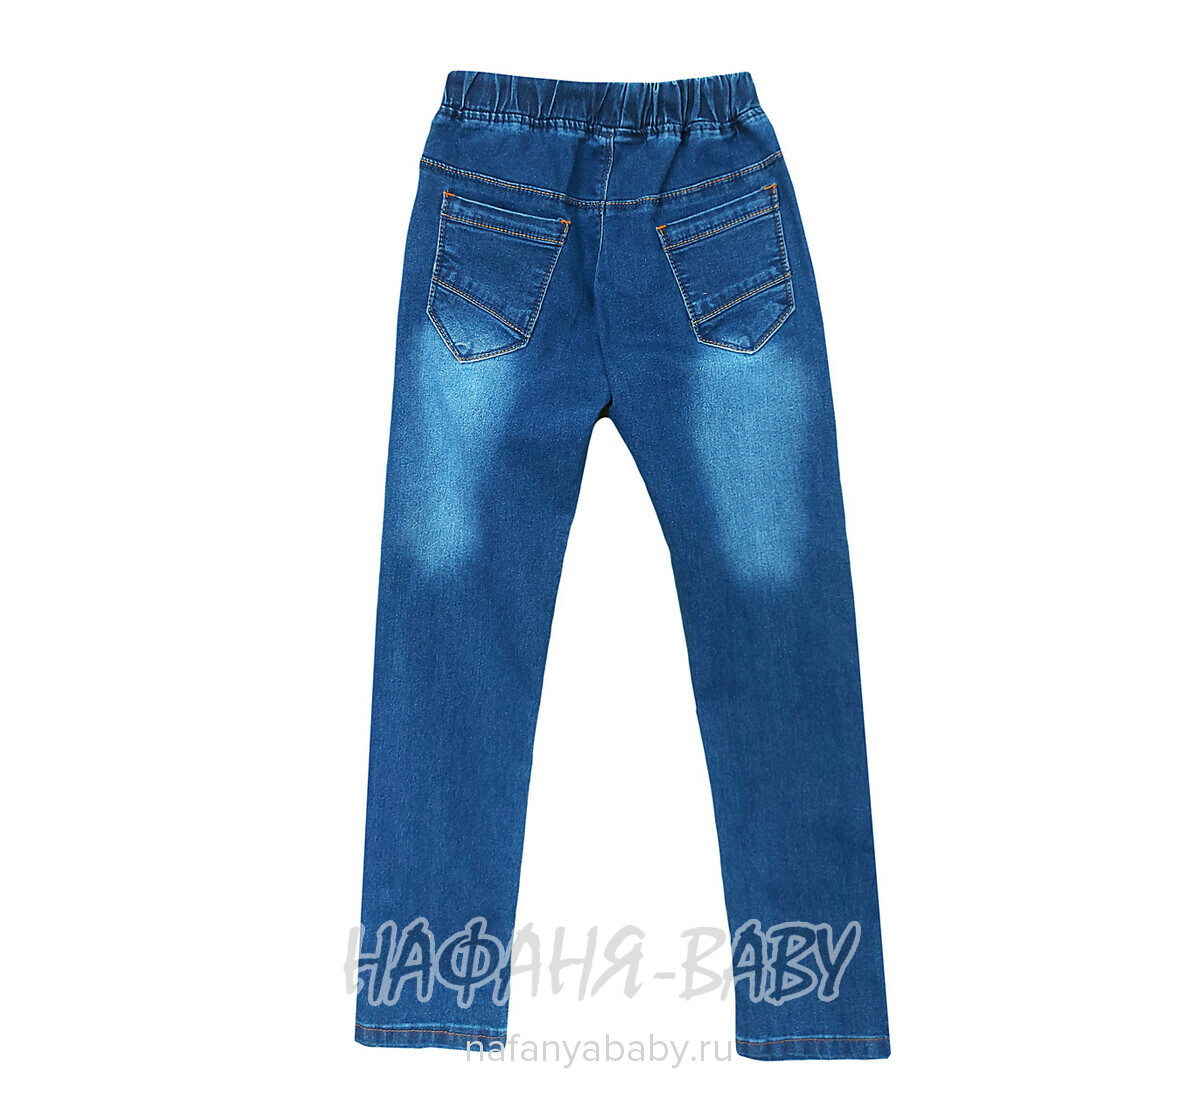 Подростковые джинсы TATI Jeans арт: 7489, 9-12 лет, цвет синий, оптом Турция